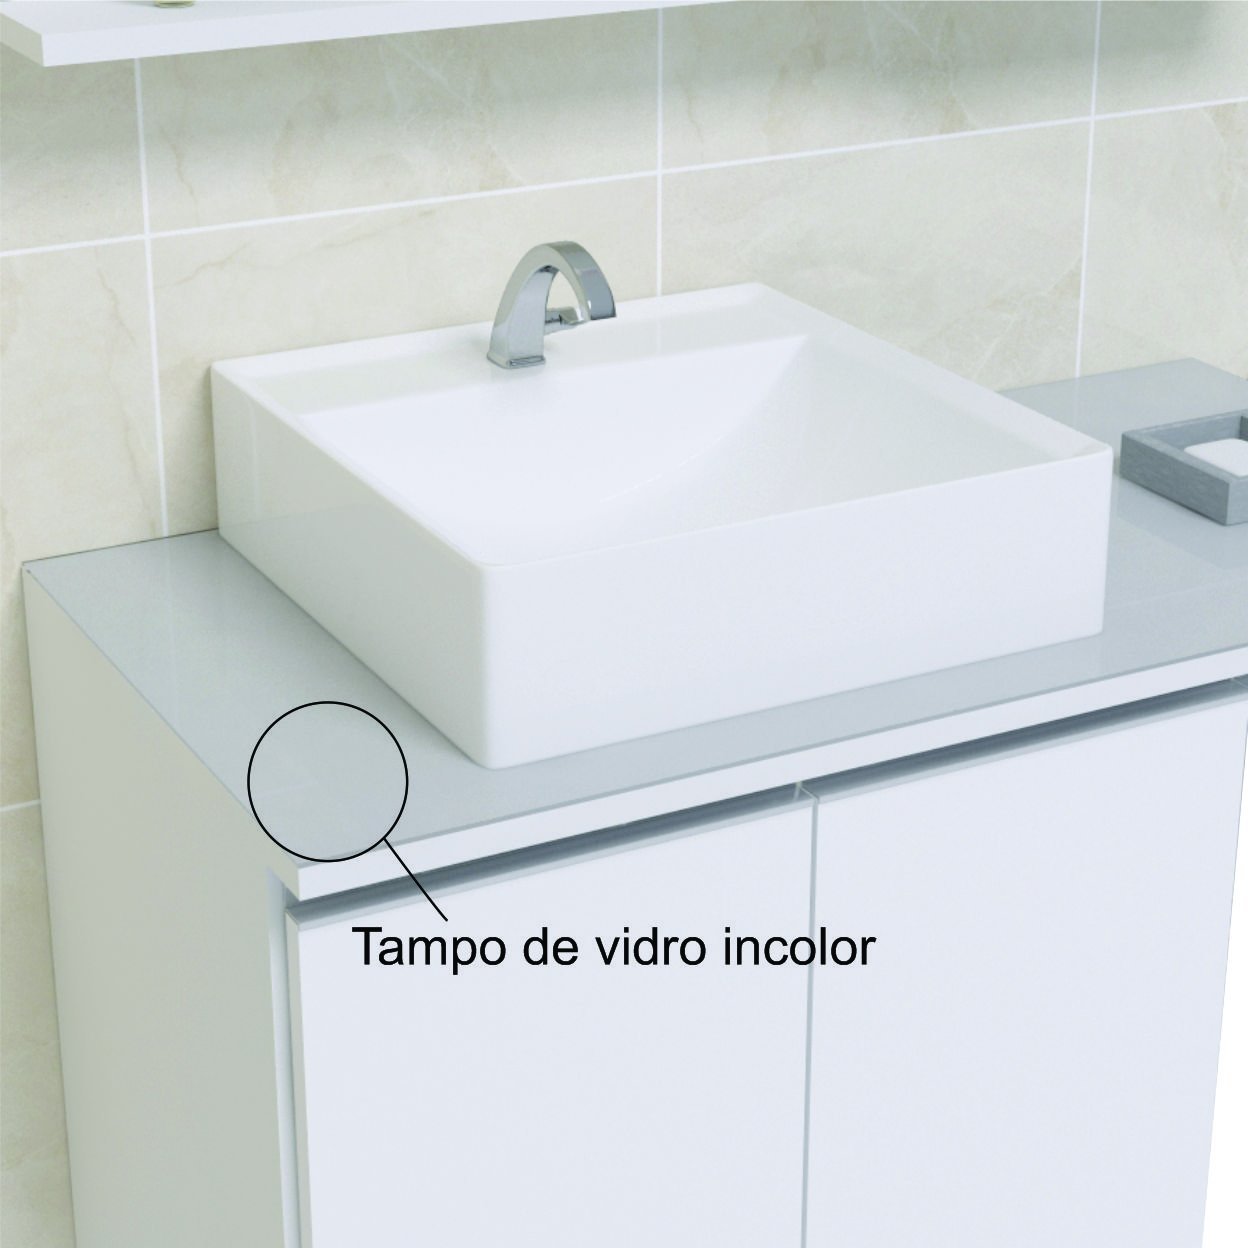 Conjunto Gabinete Banheiro Completo Prisma 60cm - Branco / Cinza COM TAMPO VIDRO - 2